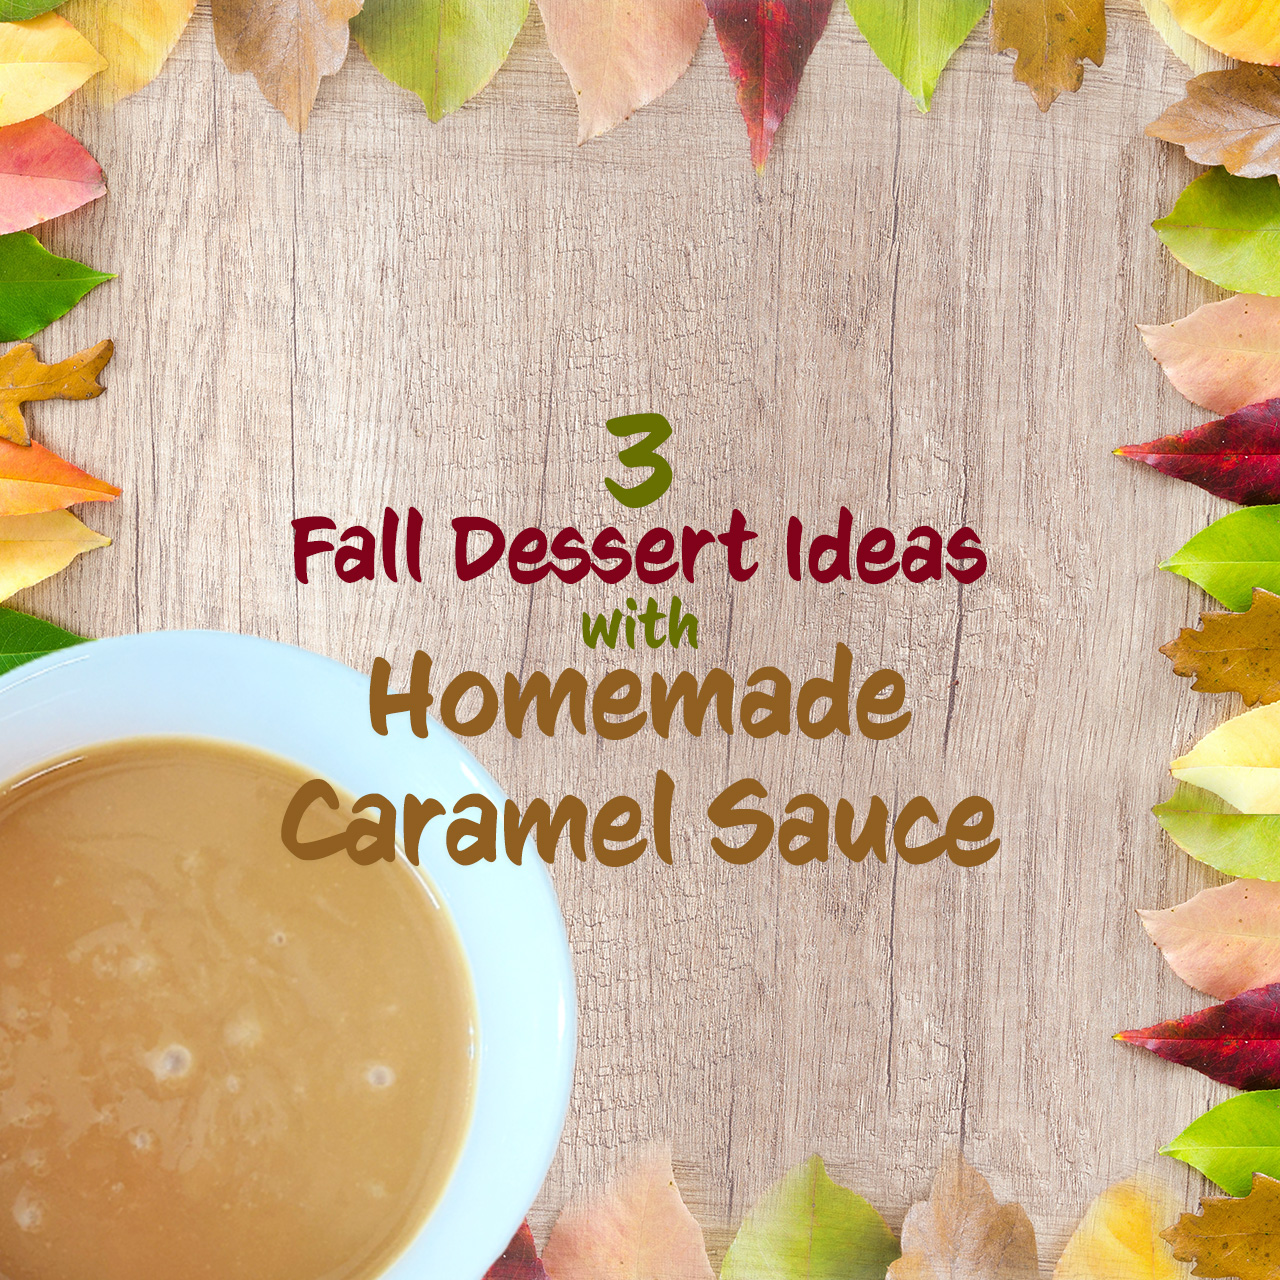 3 Fall Dessert Ideas with Homemade Caramel Sauce